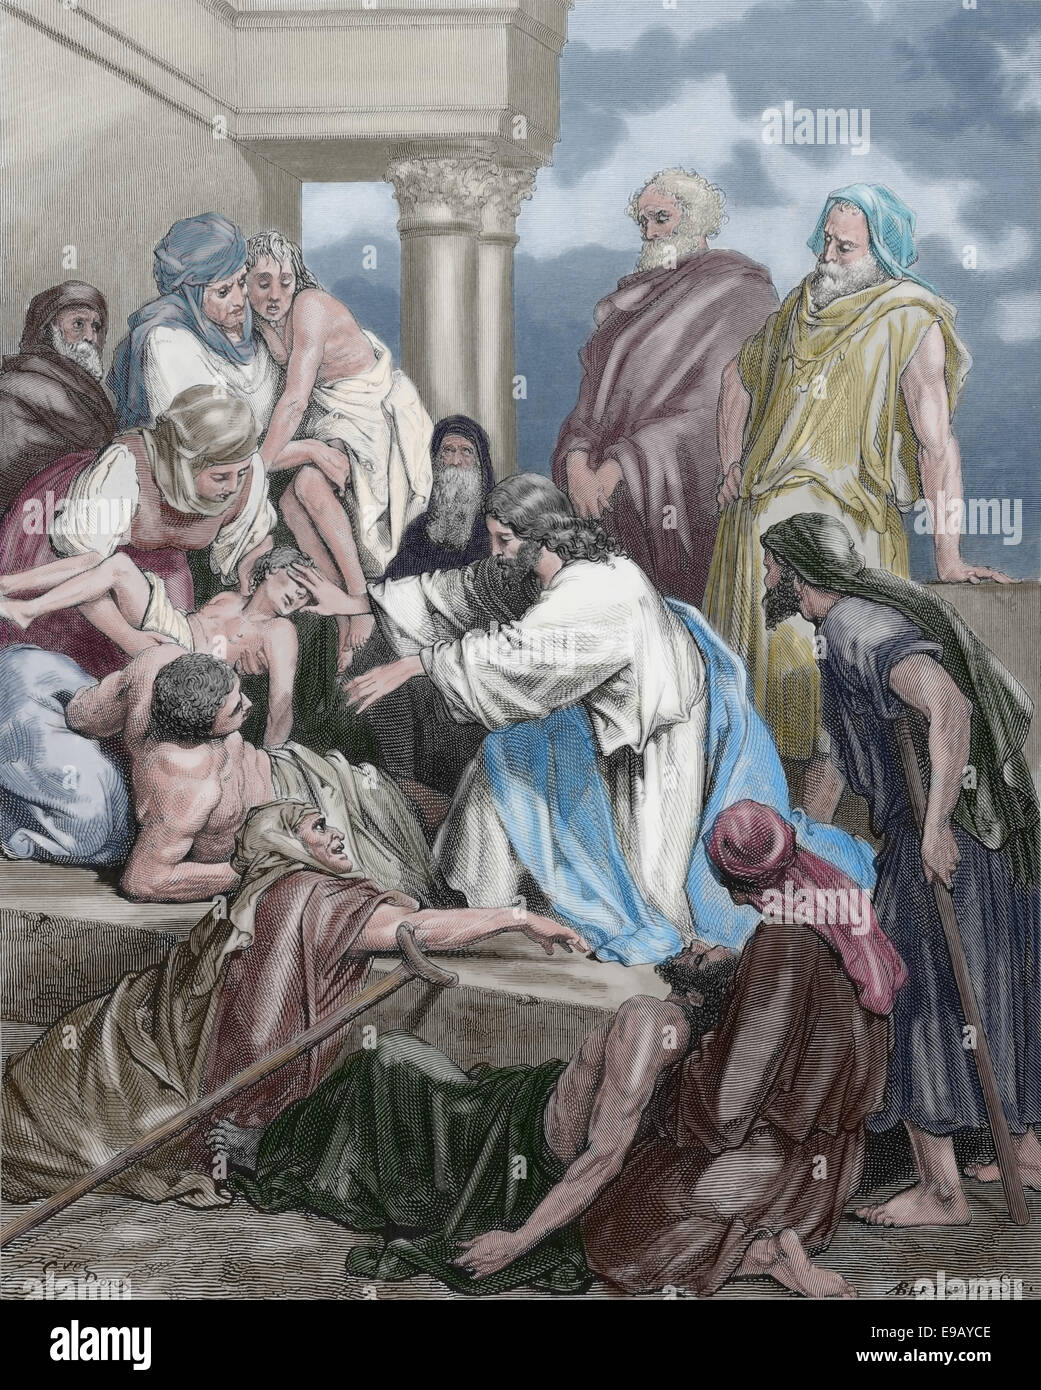 Bibbia illustrata. Il Nuovo Testamento. Gesù che guarisce i malati. Disegno di Gustave Dore (1832-1883). Xix secolo. Colorazione successiva. Foto Stock